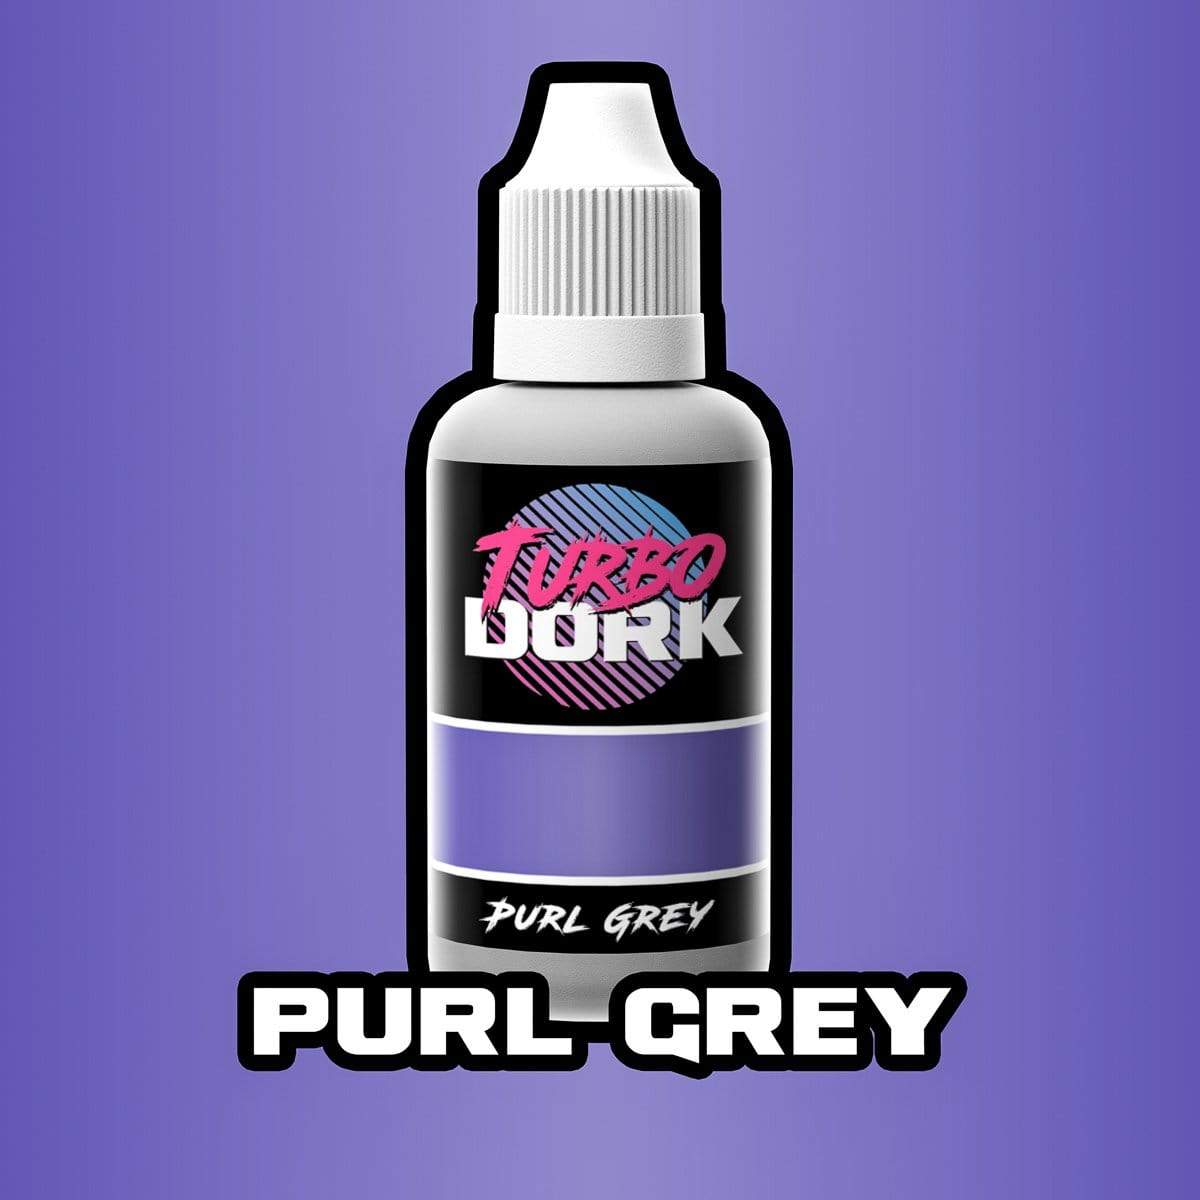 Purl Grey Metallic Acrylic Paint Metallic Turbo Dork Exit 23 Games Purl Grey Metallic Acrylic Paint